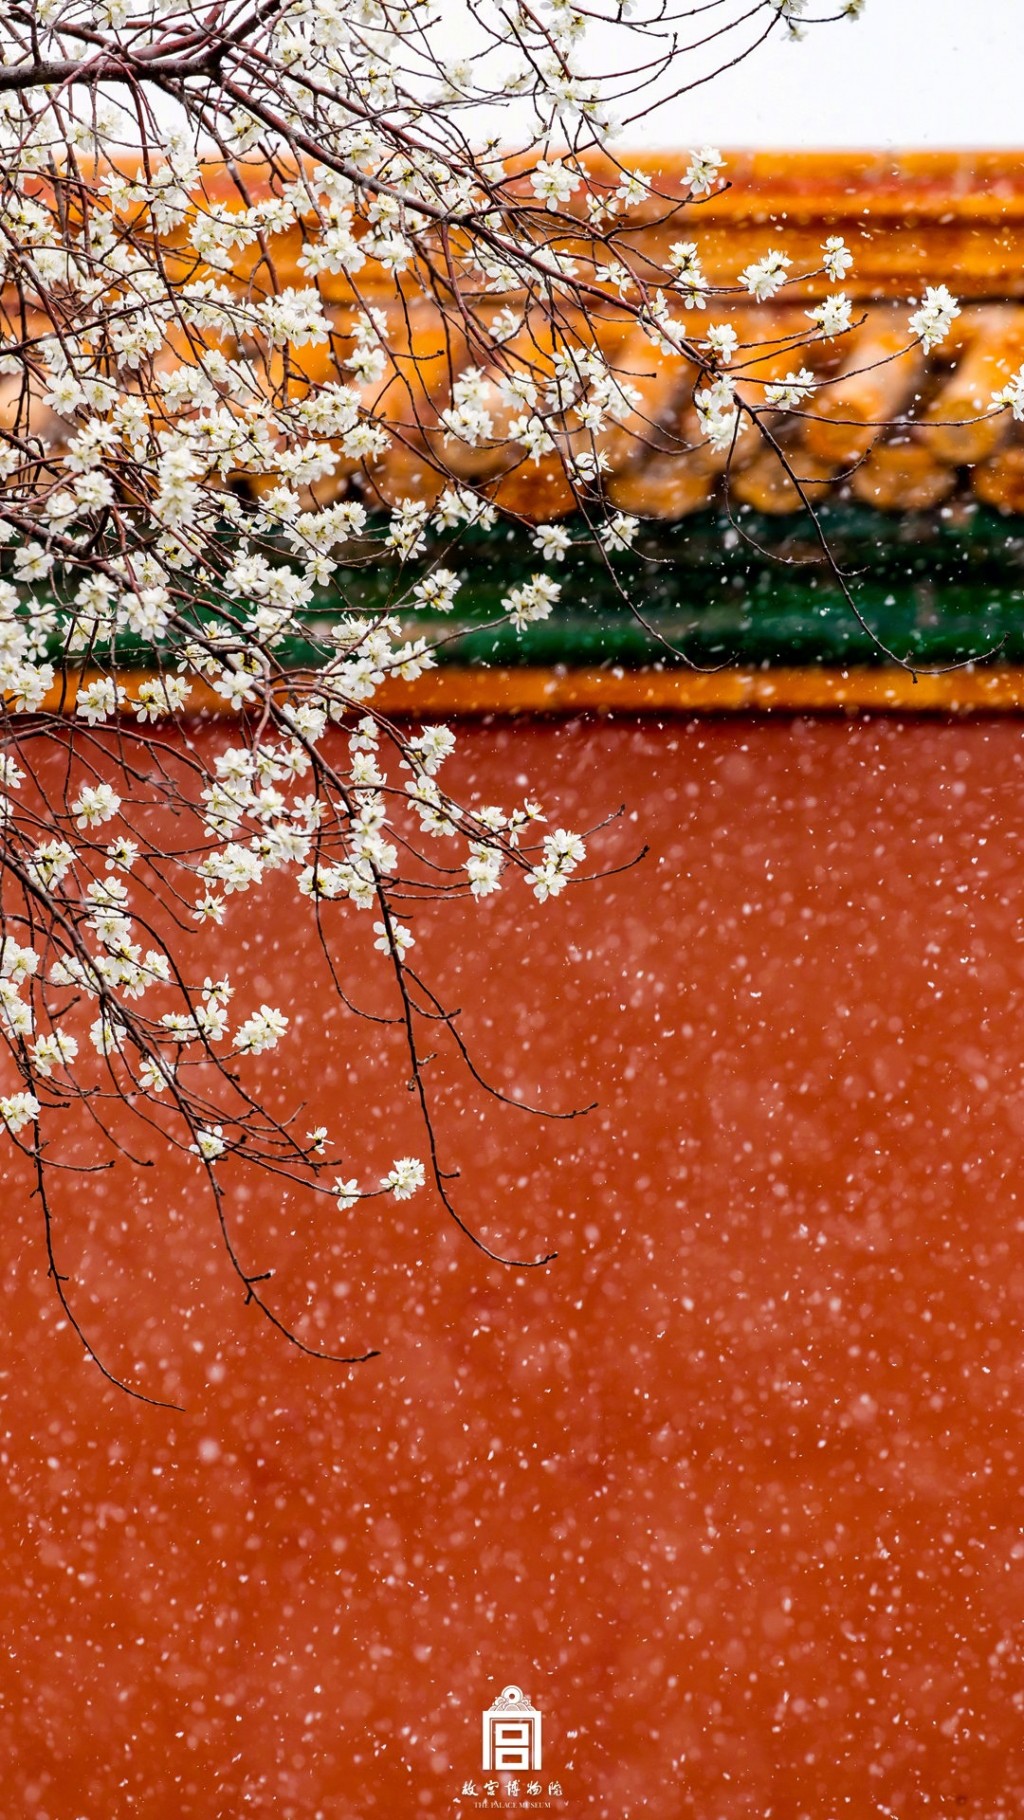 故宫的花朝春雪